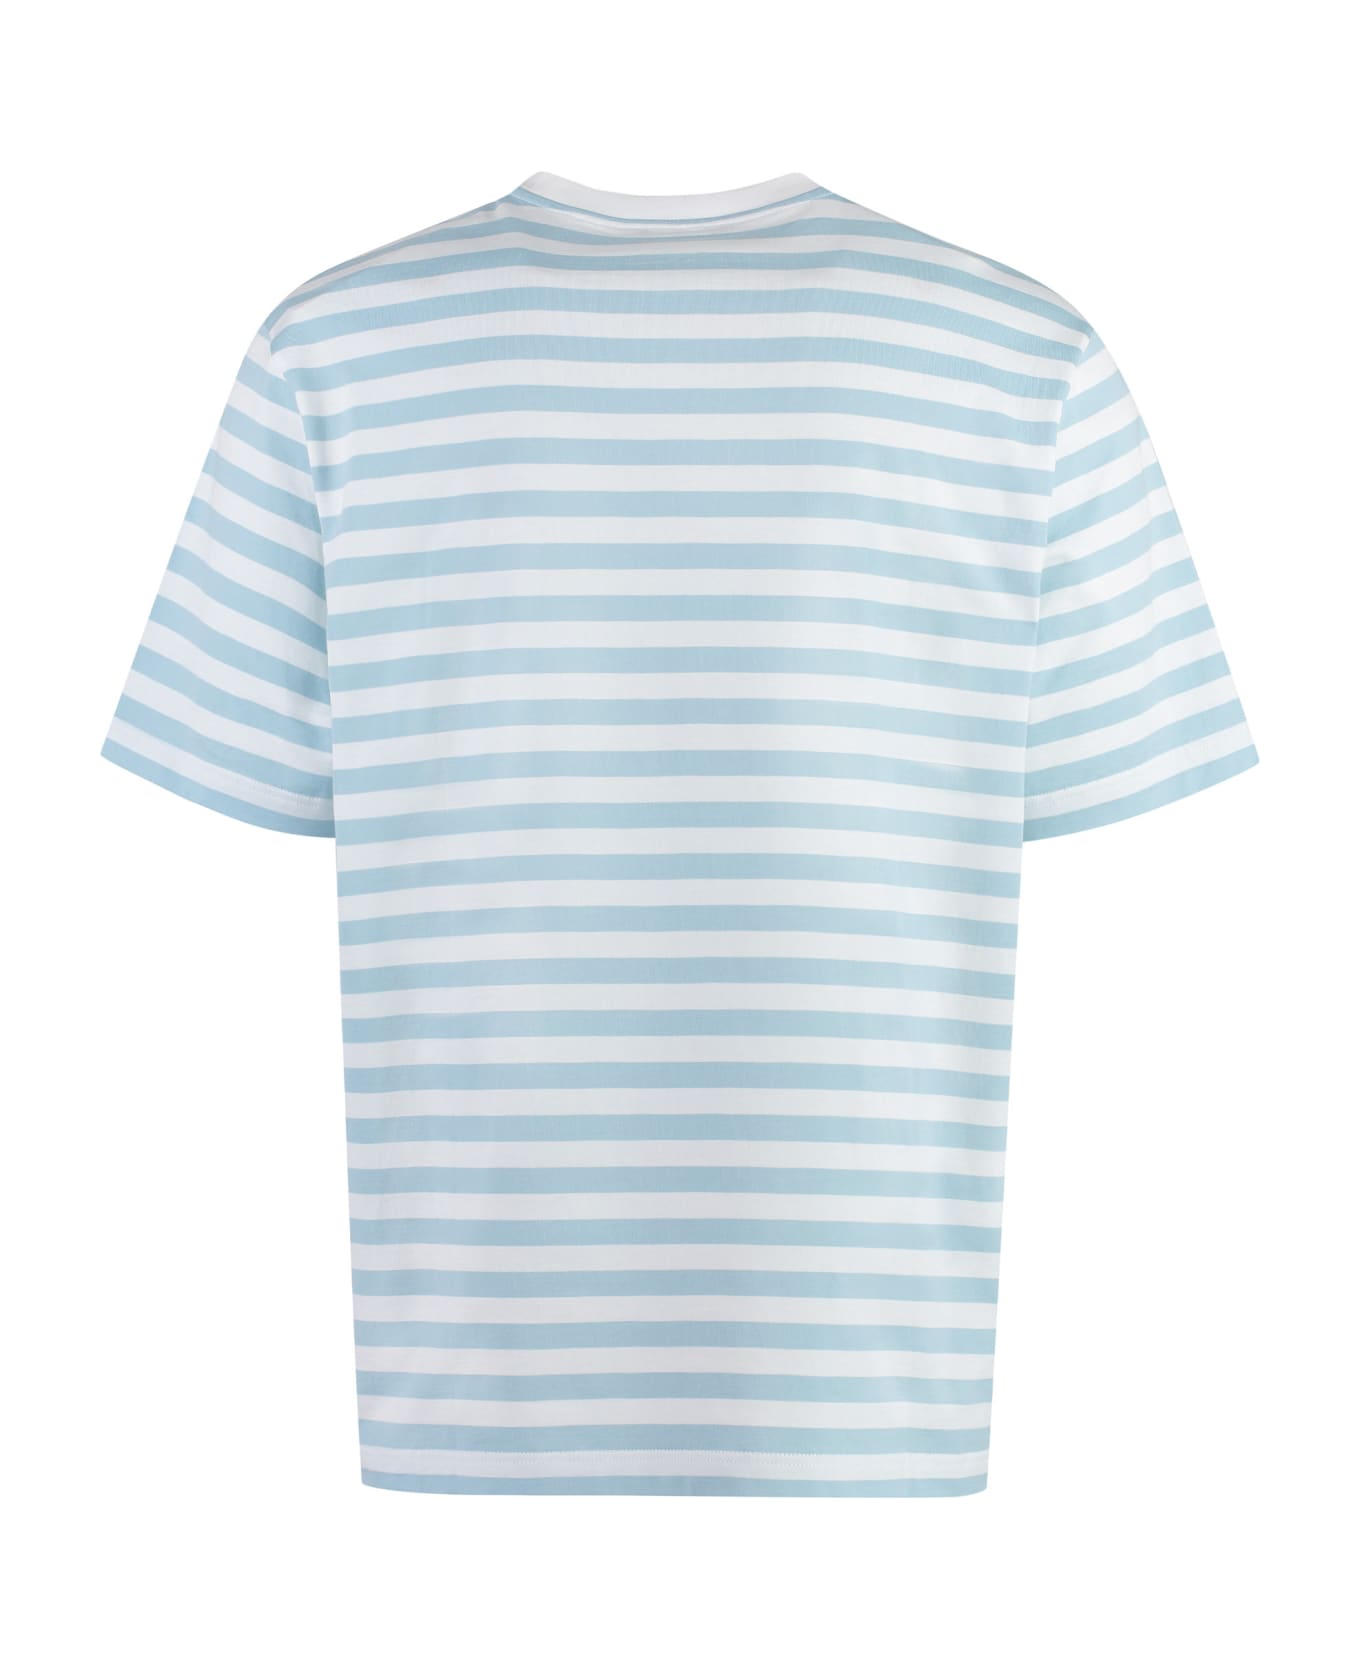 Versace Striped Cotton T-shirt - Light Blue シャツ